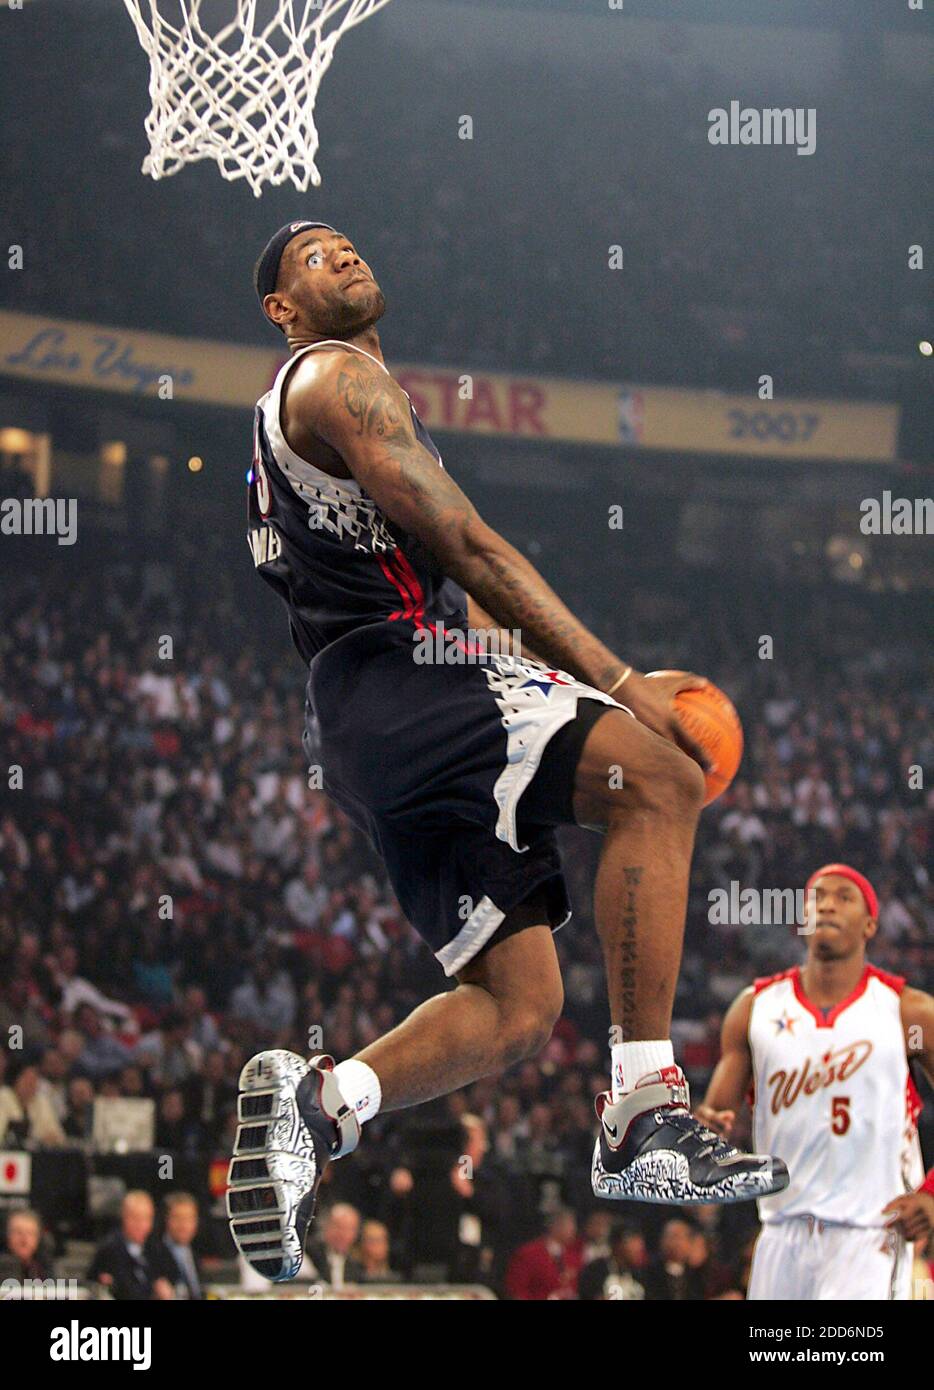 LeBron James best dunks of playoffs mixtape #nba #basketball